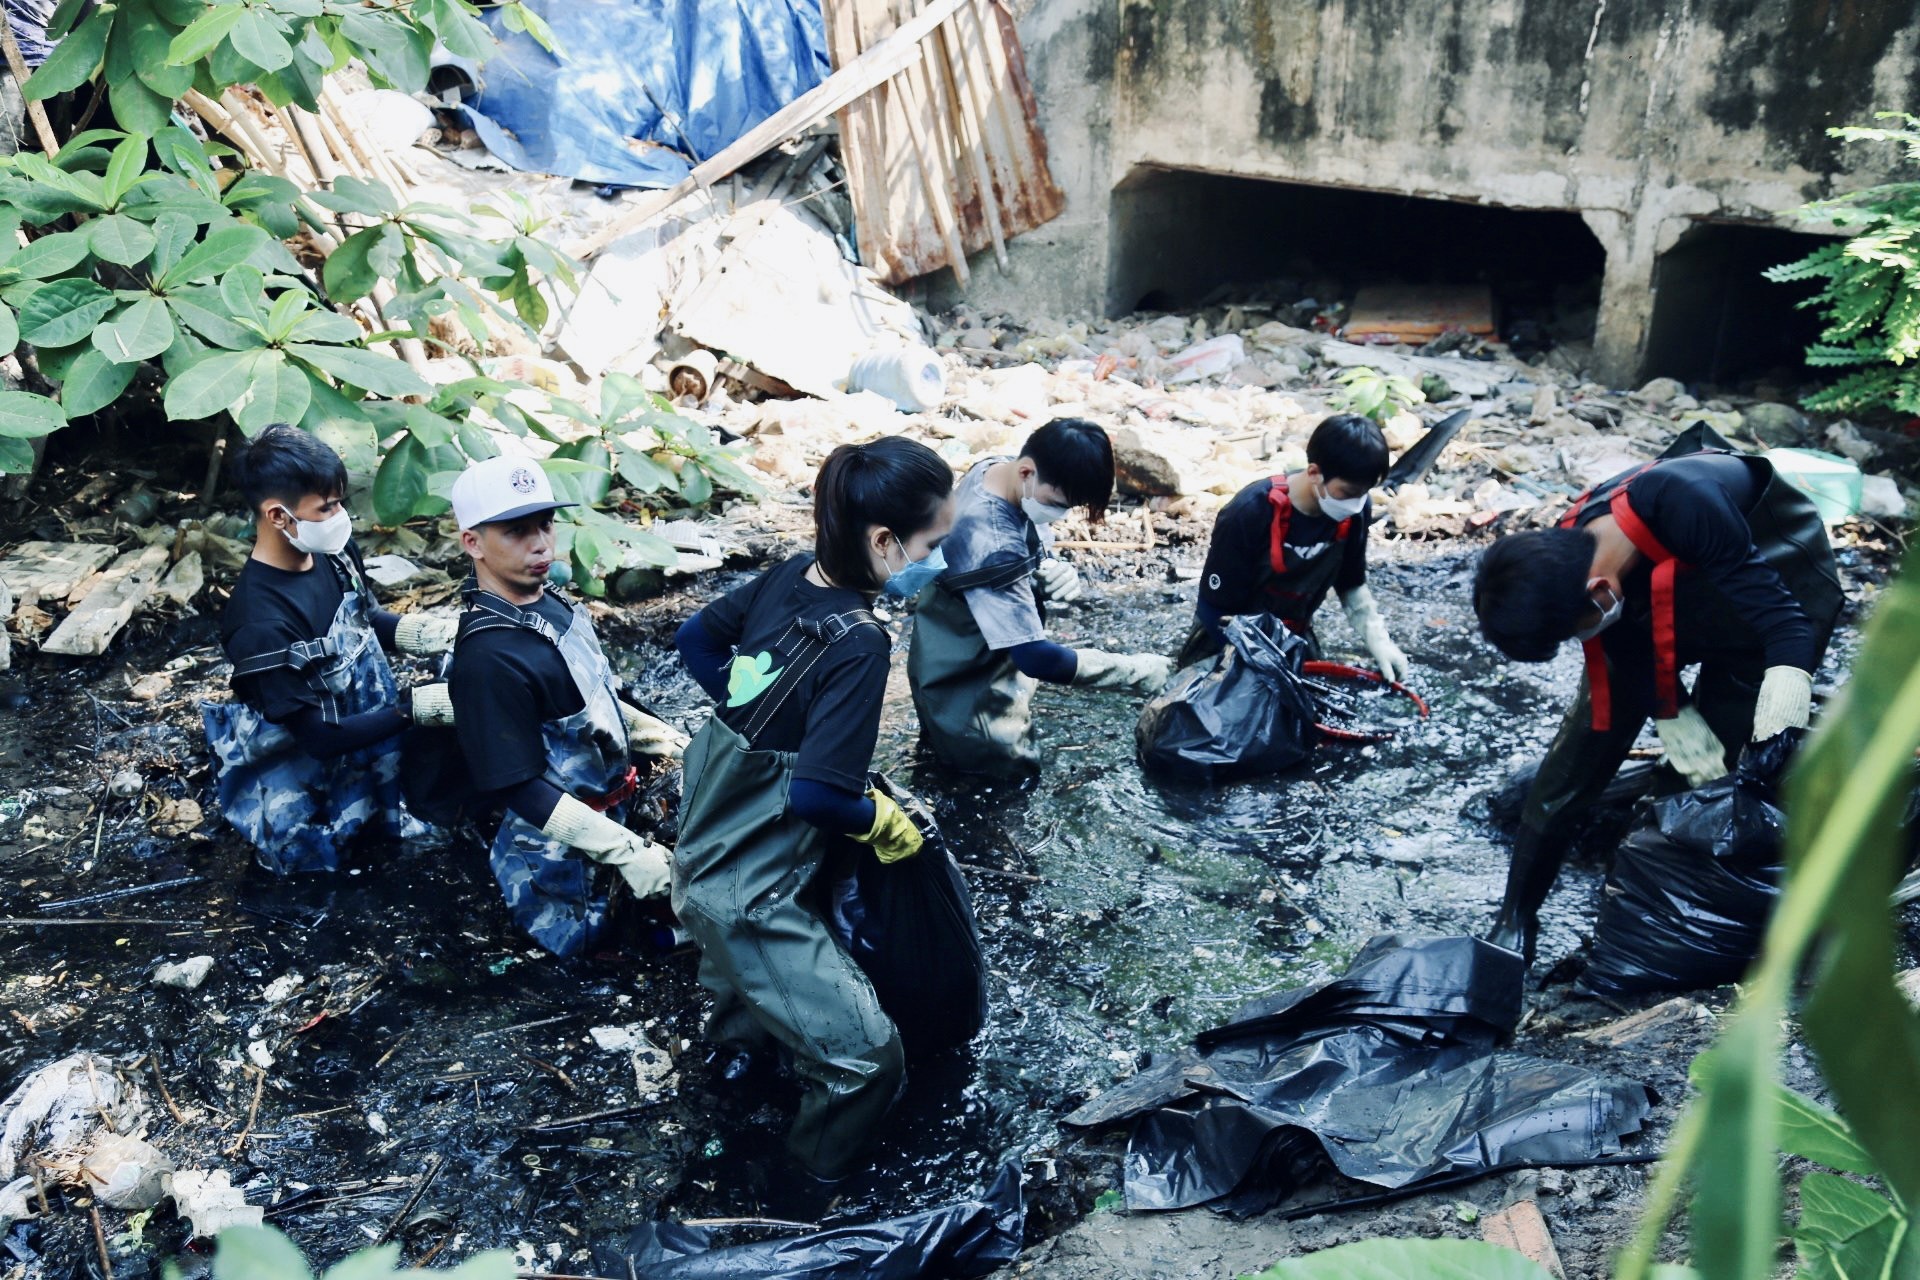 Biến kênh rạch hôi thối ở Sài Gòn trở nên sạch đẹp hơn, nhóm bạn trẻ mong người dân đừng vứt rác trở lại - Ảnh 7.